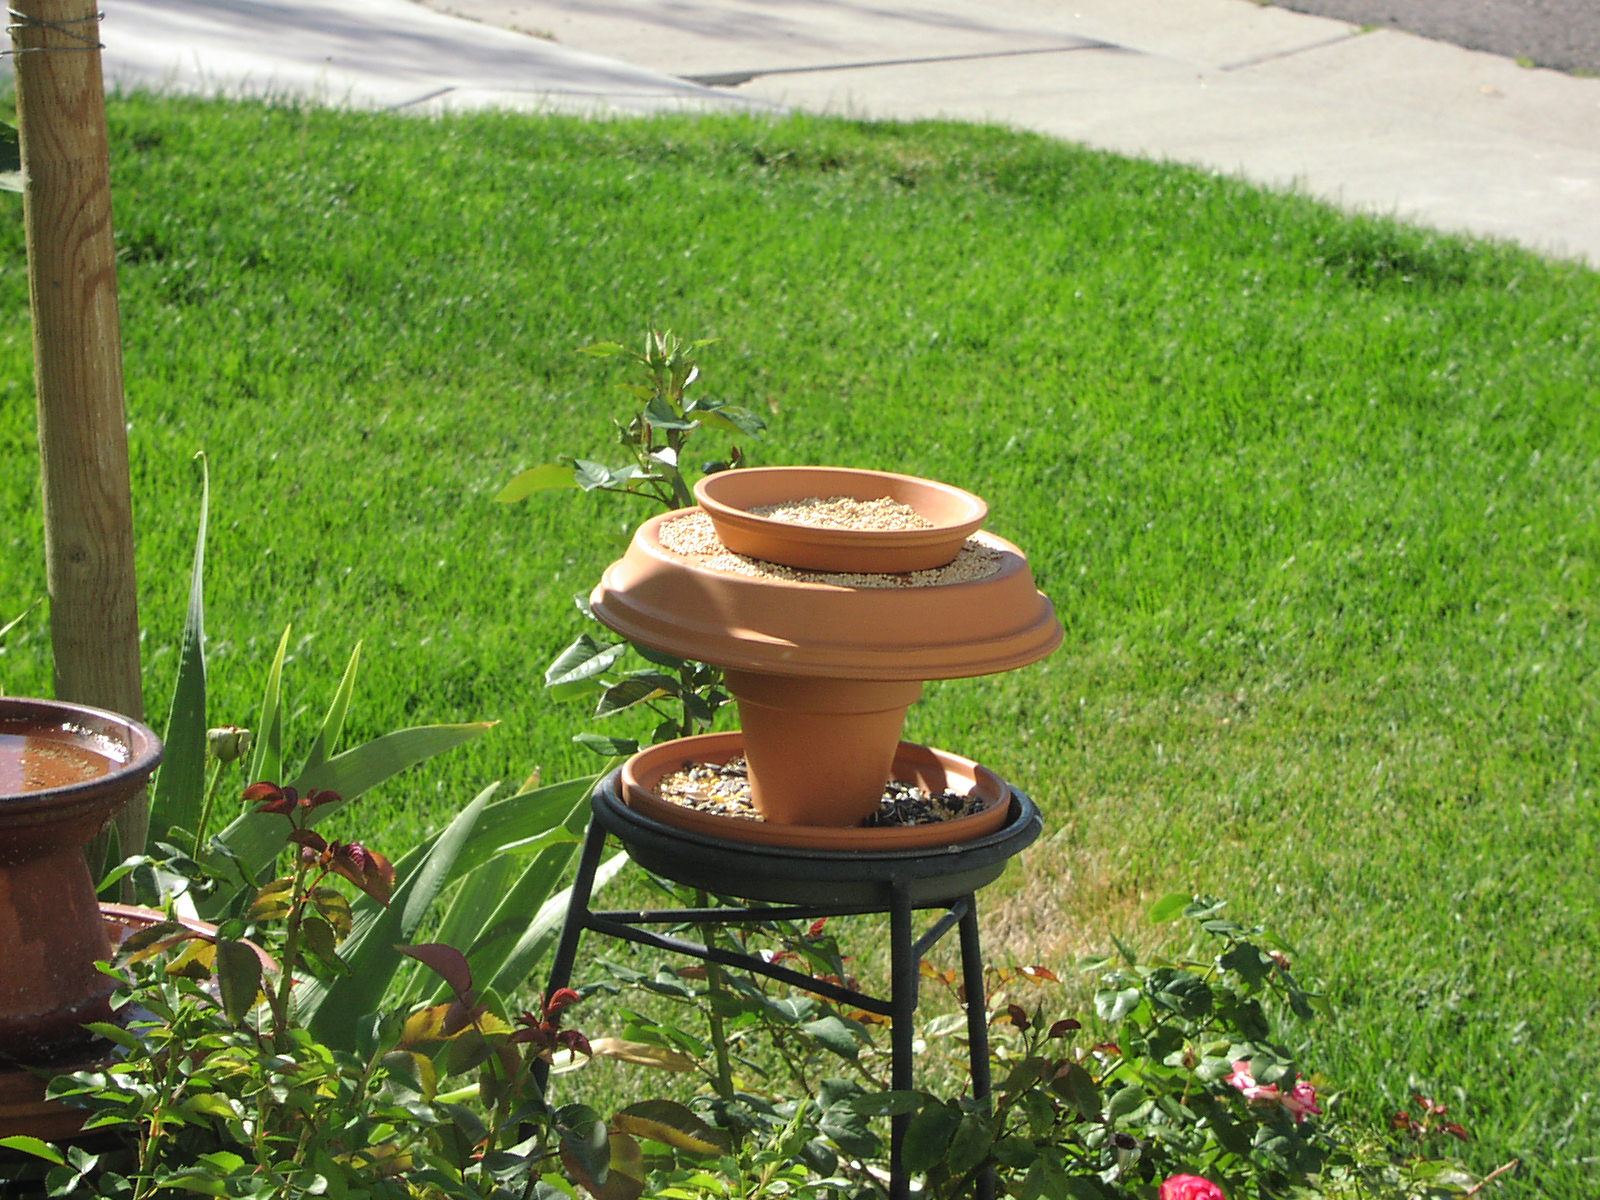 Bird Feeder in my front yard 2005 - 2006